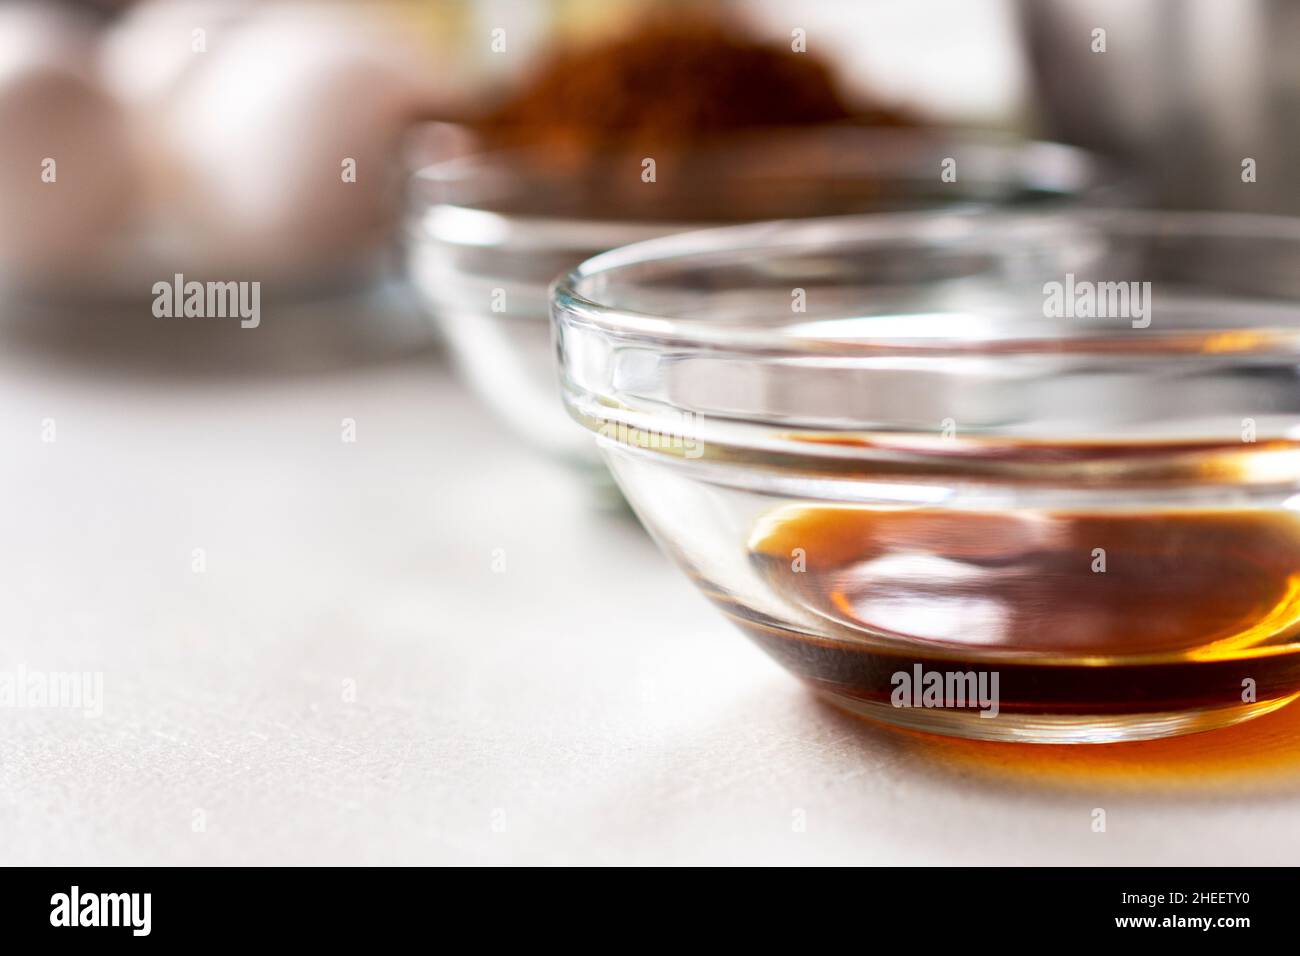 Una vista closeup della vaniglia in una ciotola di vetro. Altri ingredienti di cottura sfocati sullo sfondo. Profondità di campo poco profonda. Spazio di copia in basso a sinistra. Foto Stock